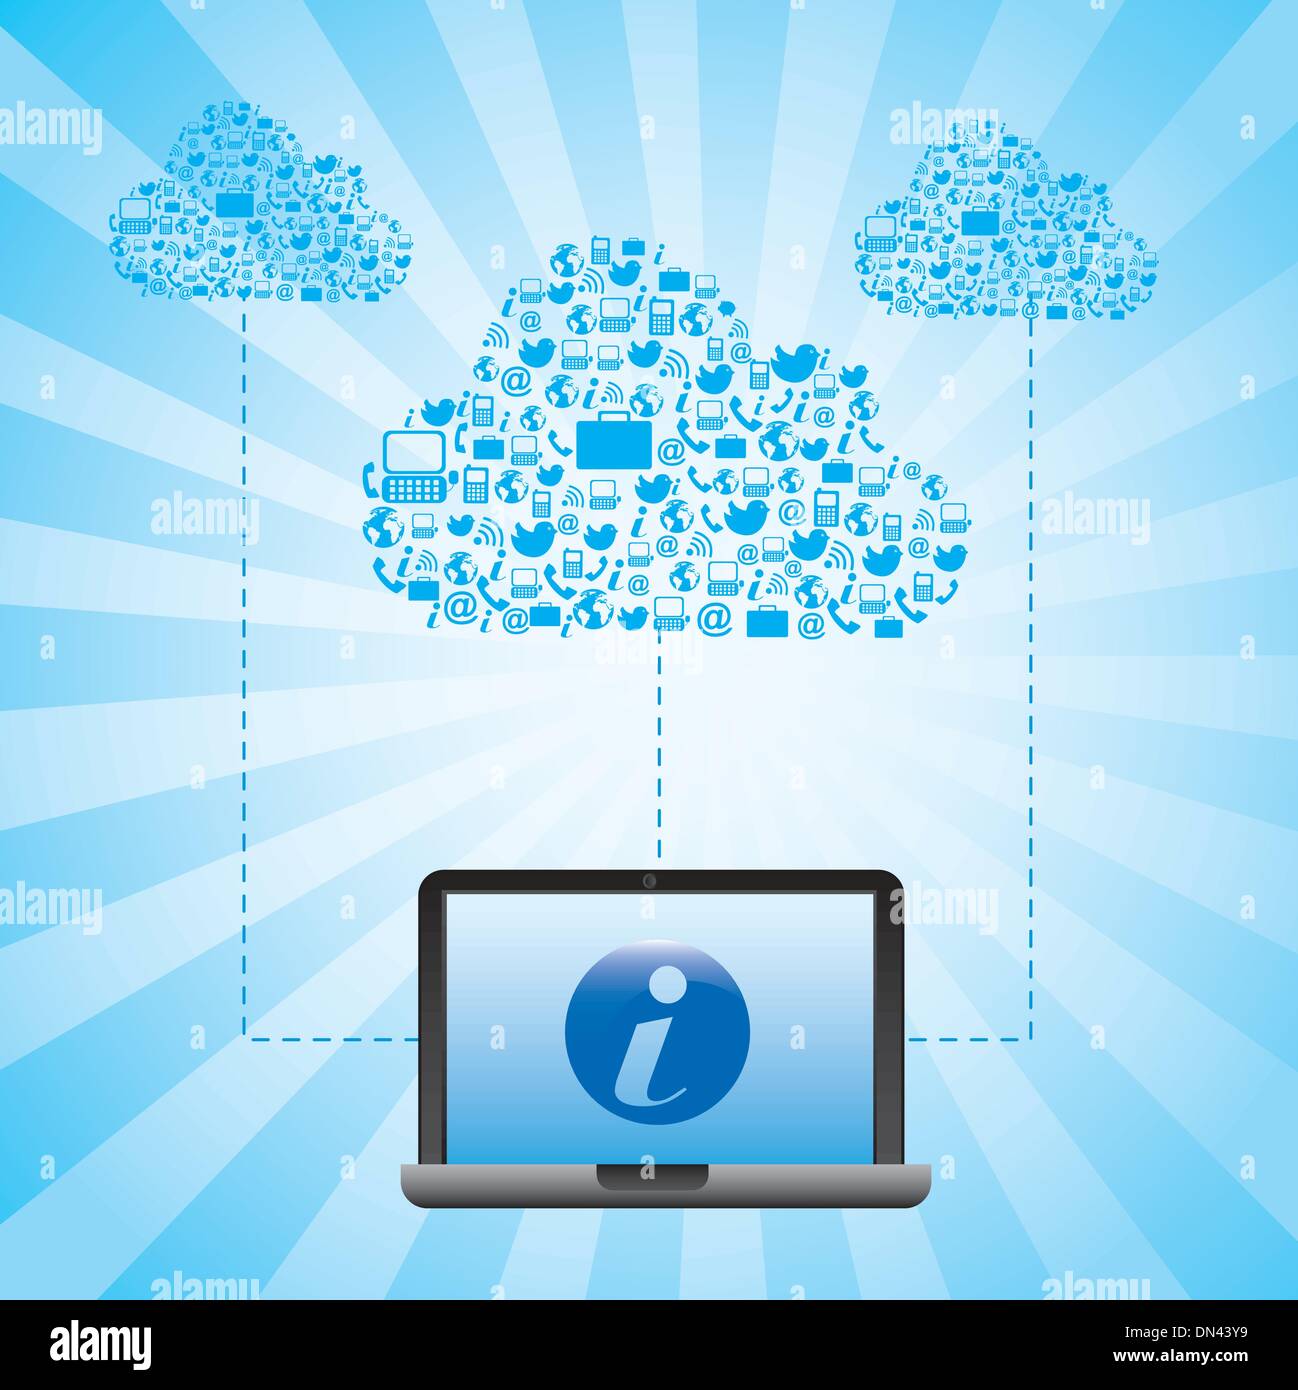 cloud information Stock Vector